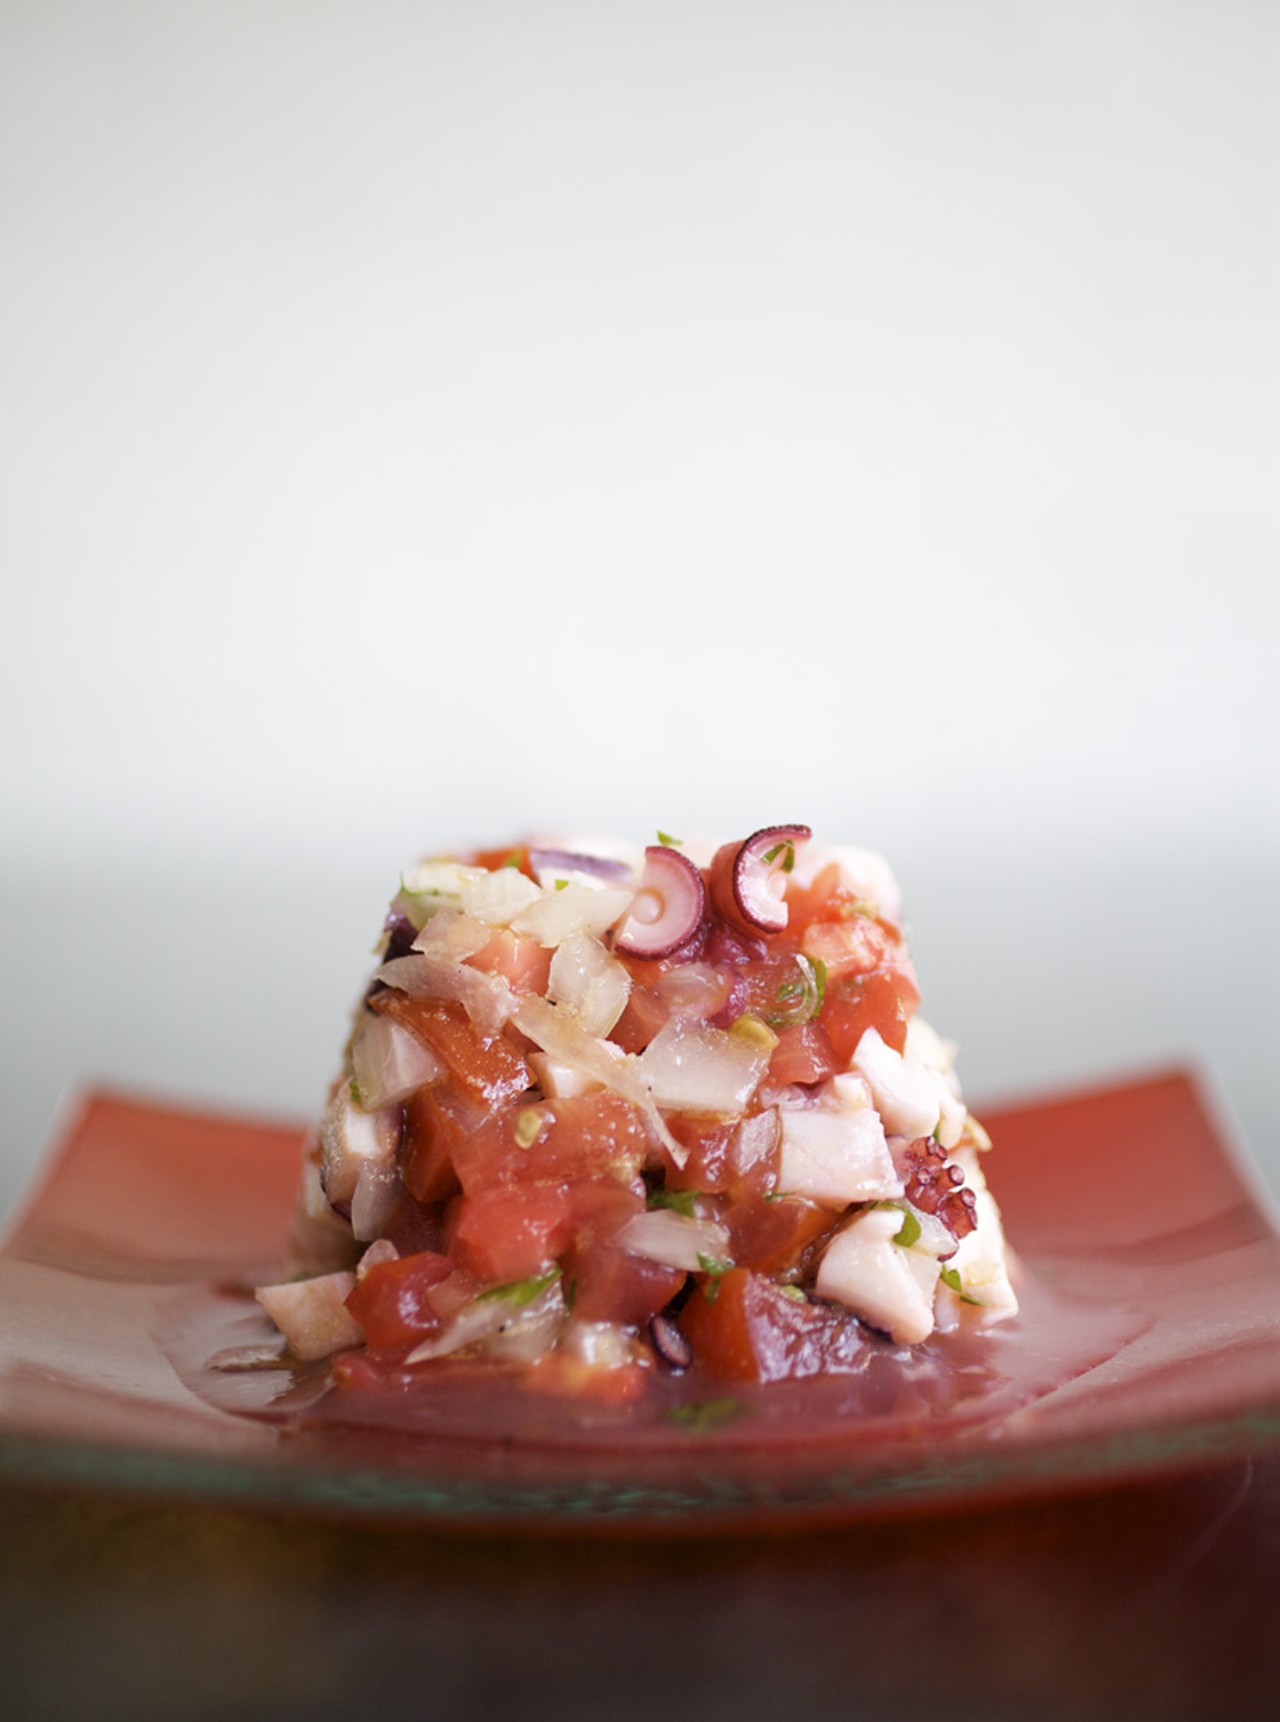 Ensalada de Pulpo - marinated tomato and octopus salad.